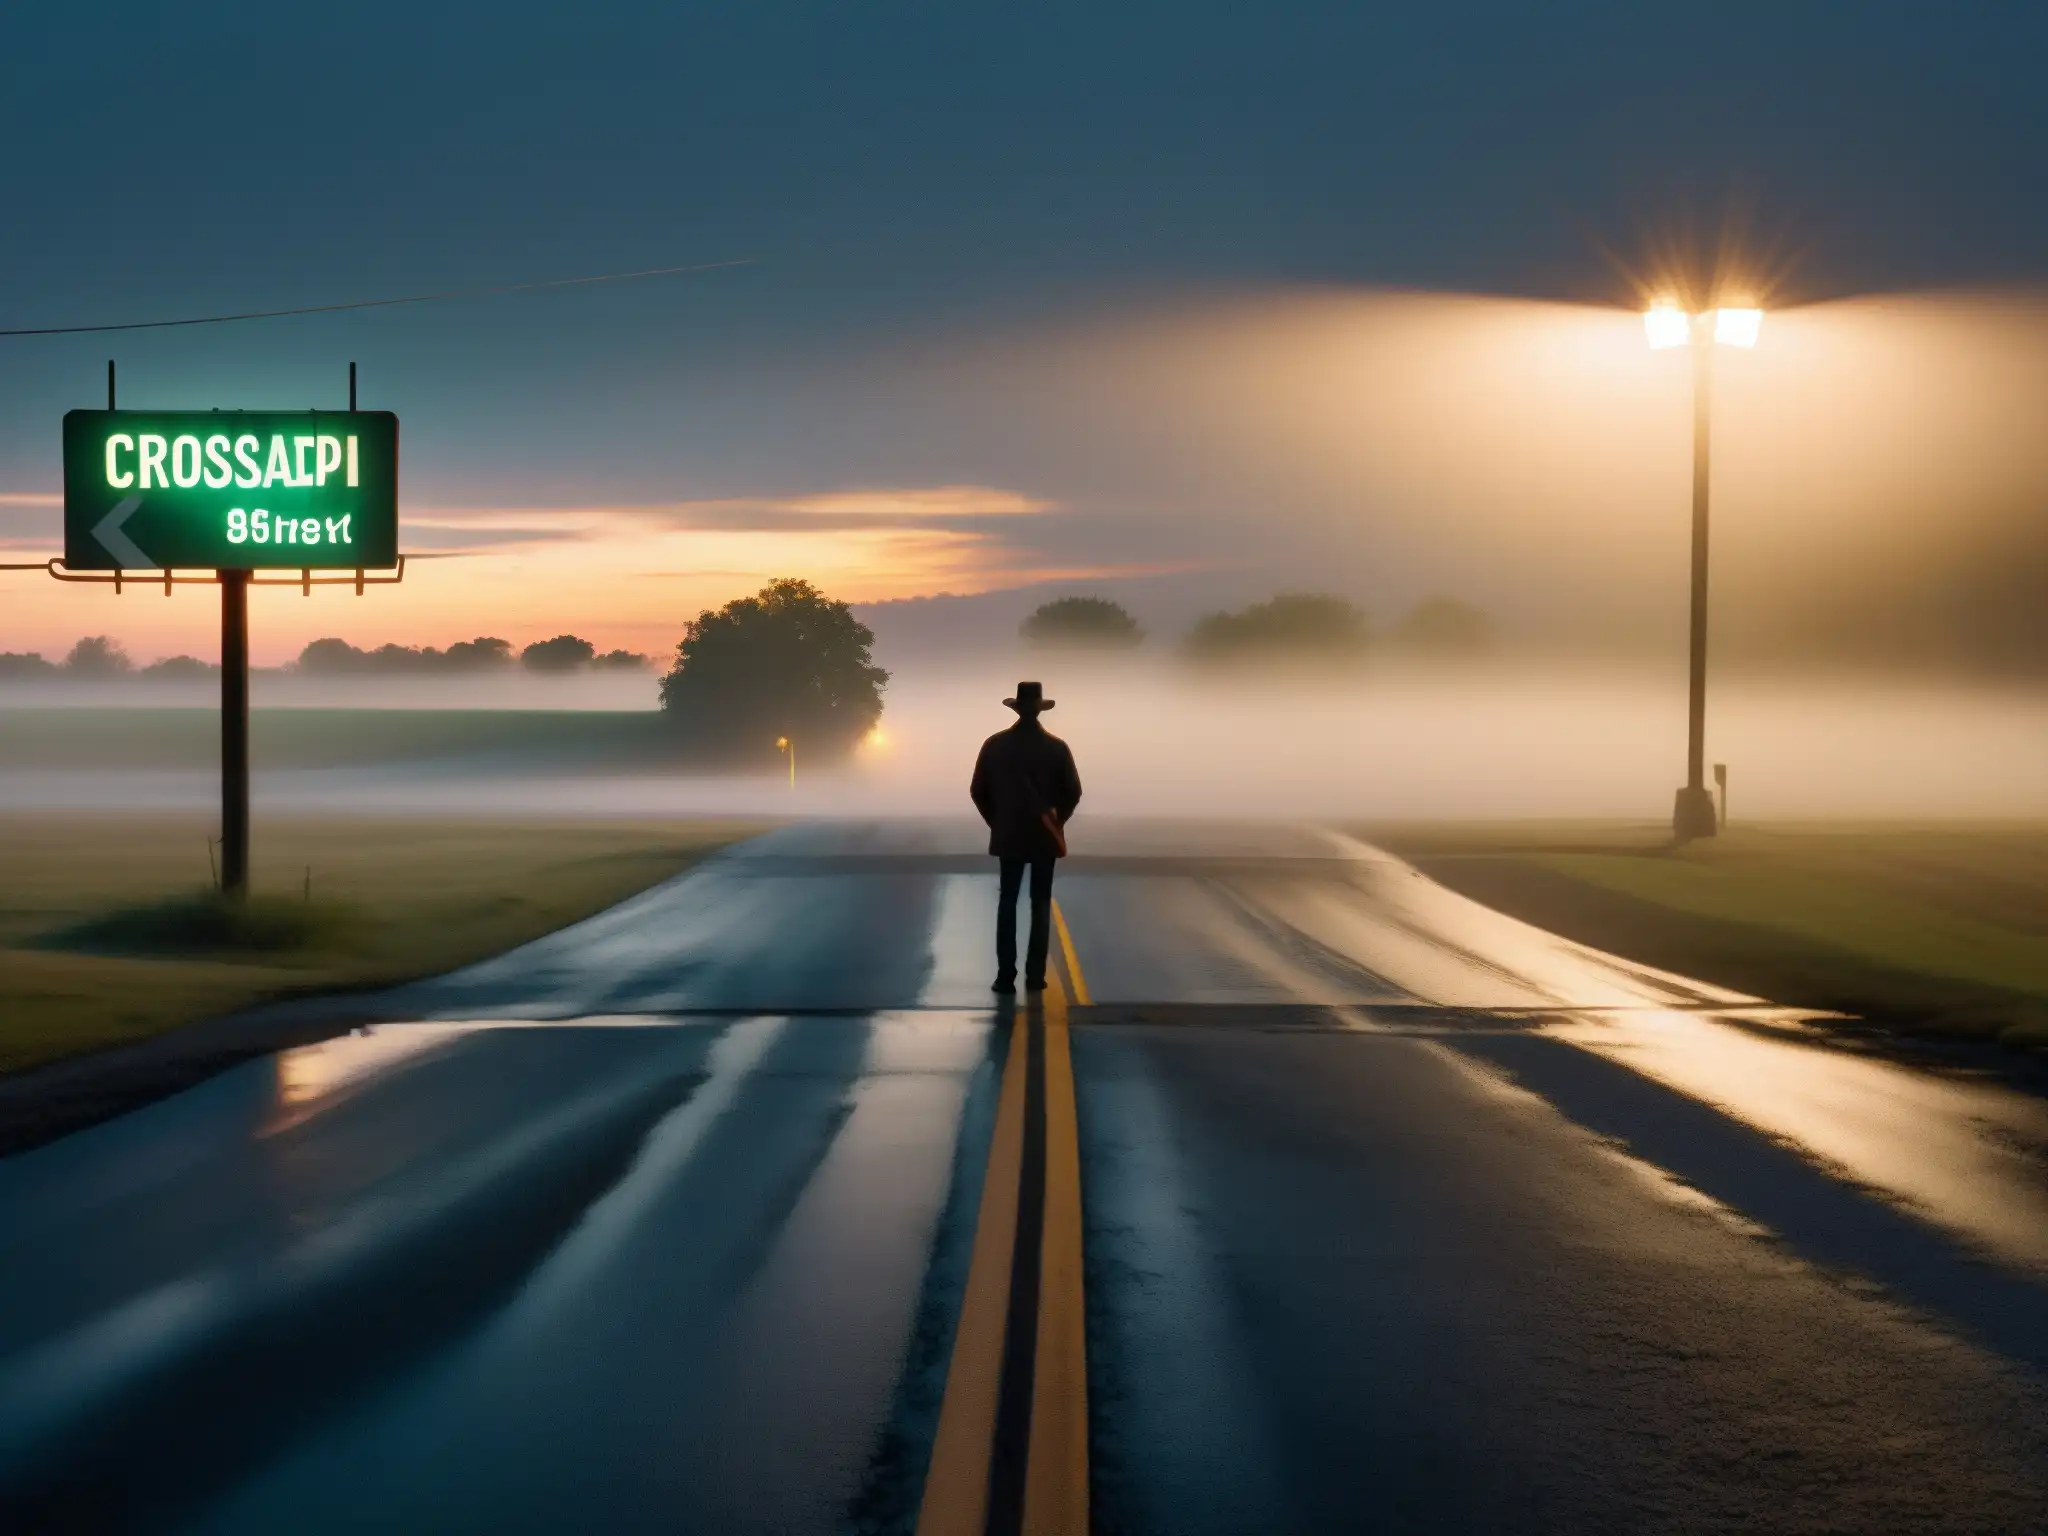 Una misteriosa encrucijada en Mississippi al atardecer, con una figura solitaria entre la niebla